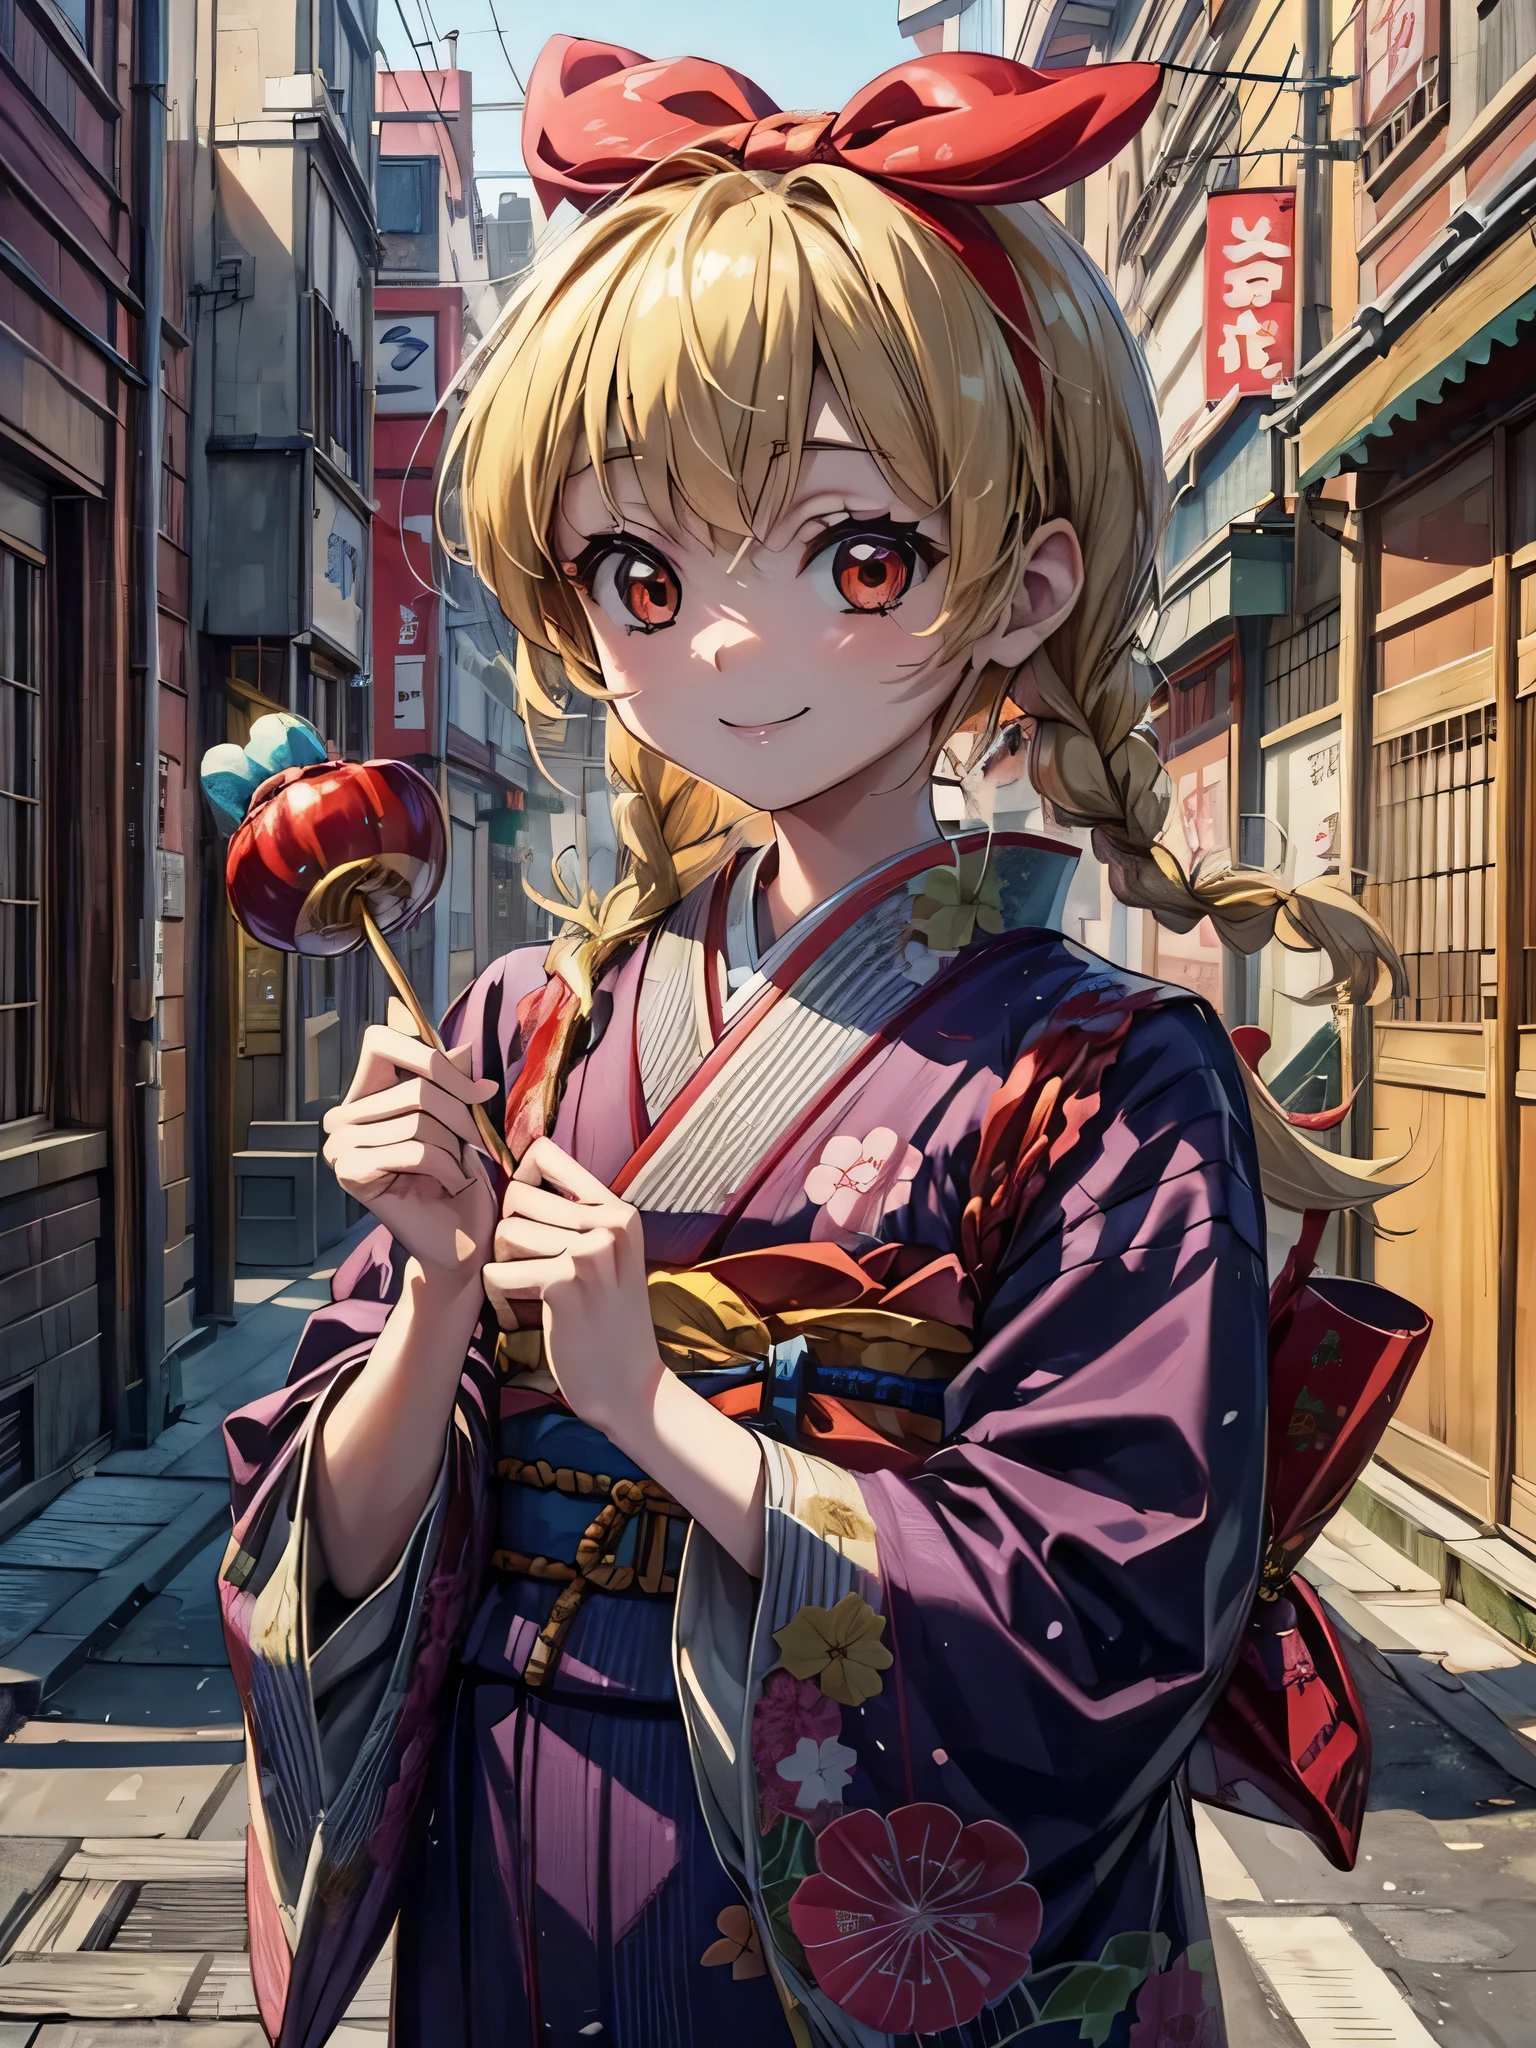 可愛的動漫日本女孩抱著熊拿著糖果棒, 1個女孩, 金髮, 日本衣服, twin 編織s, 和服, 食物, 微笑, 面具, 編織, 面具 on head, 獨自的, 糖蘋果